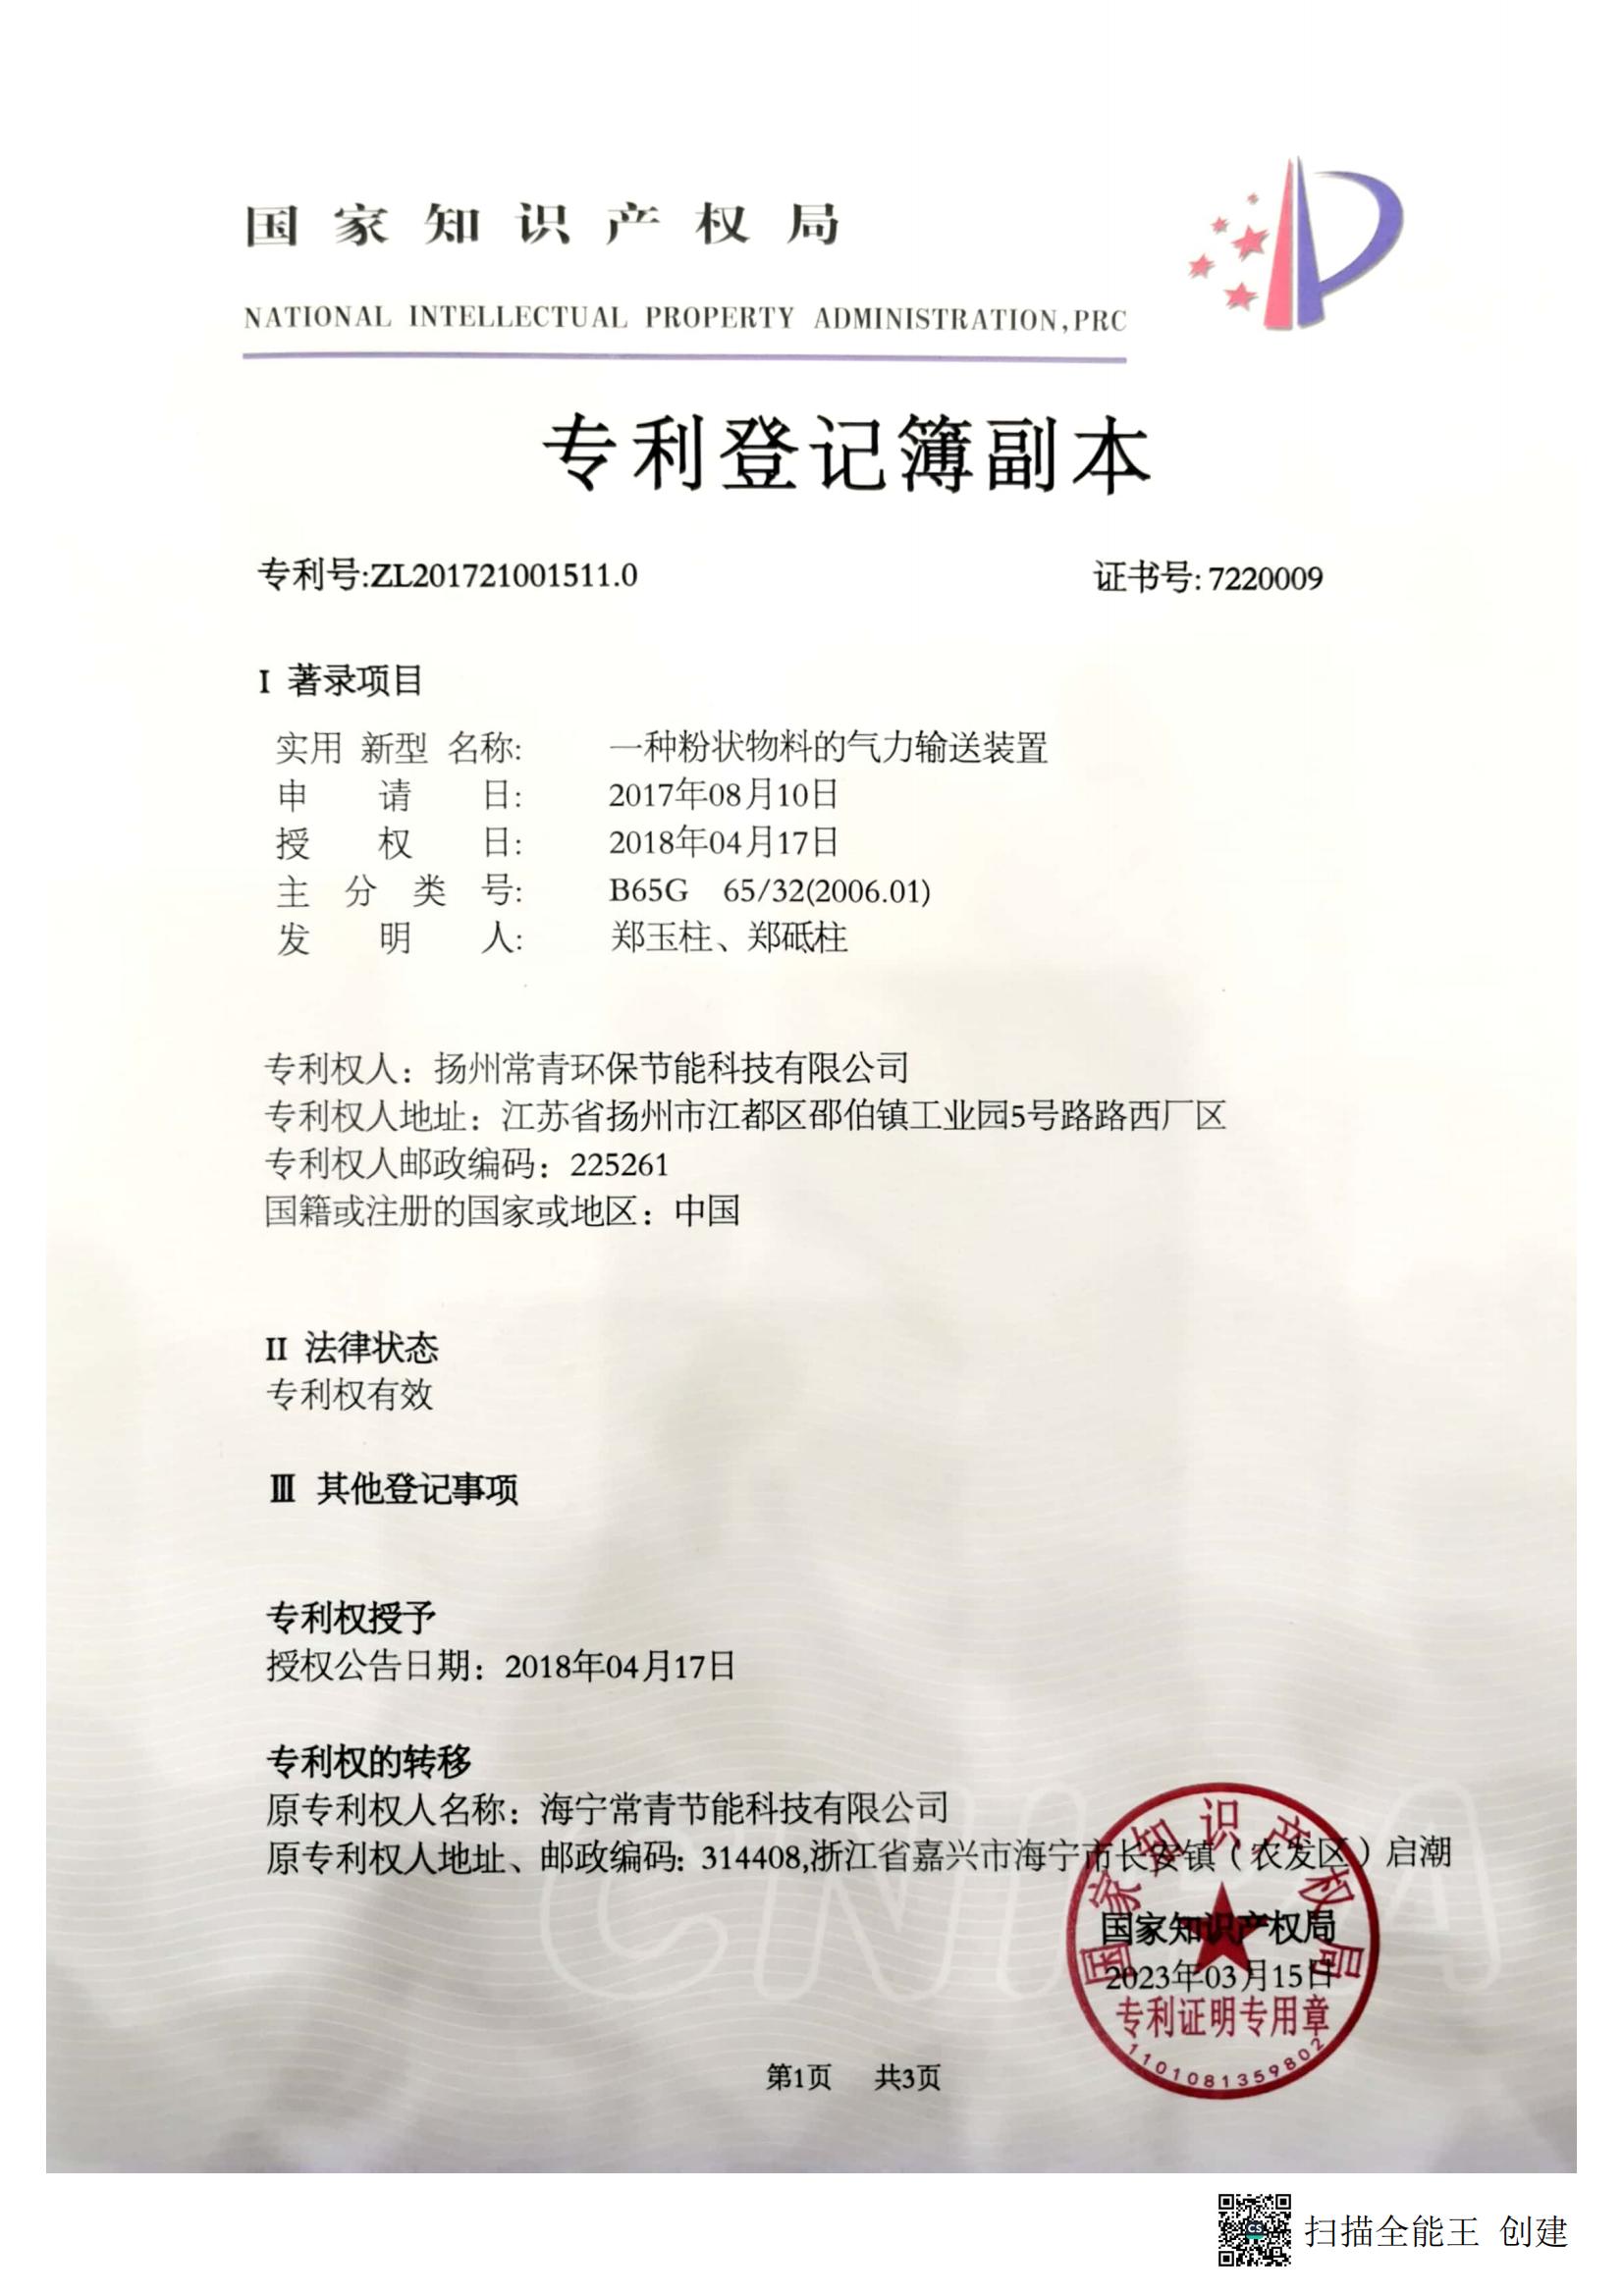 扬州常青环保节能科技有限公司-2017210015110-专利登记簿副本_00